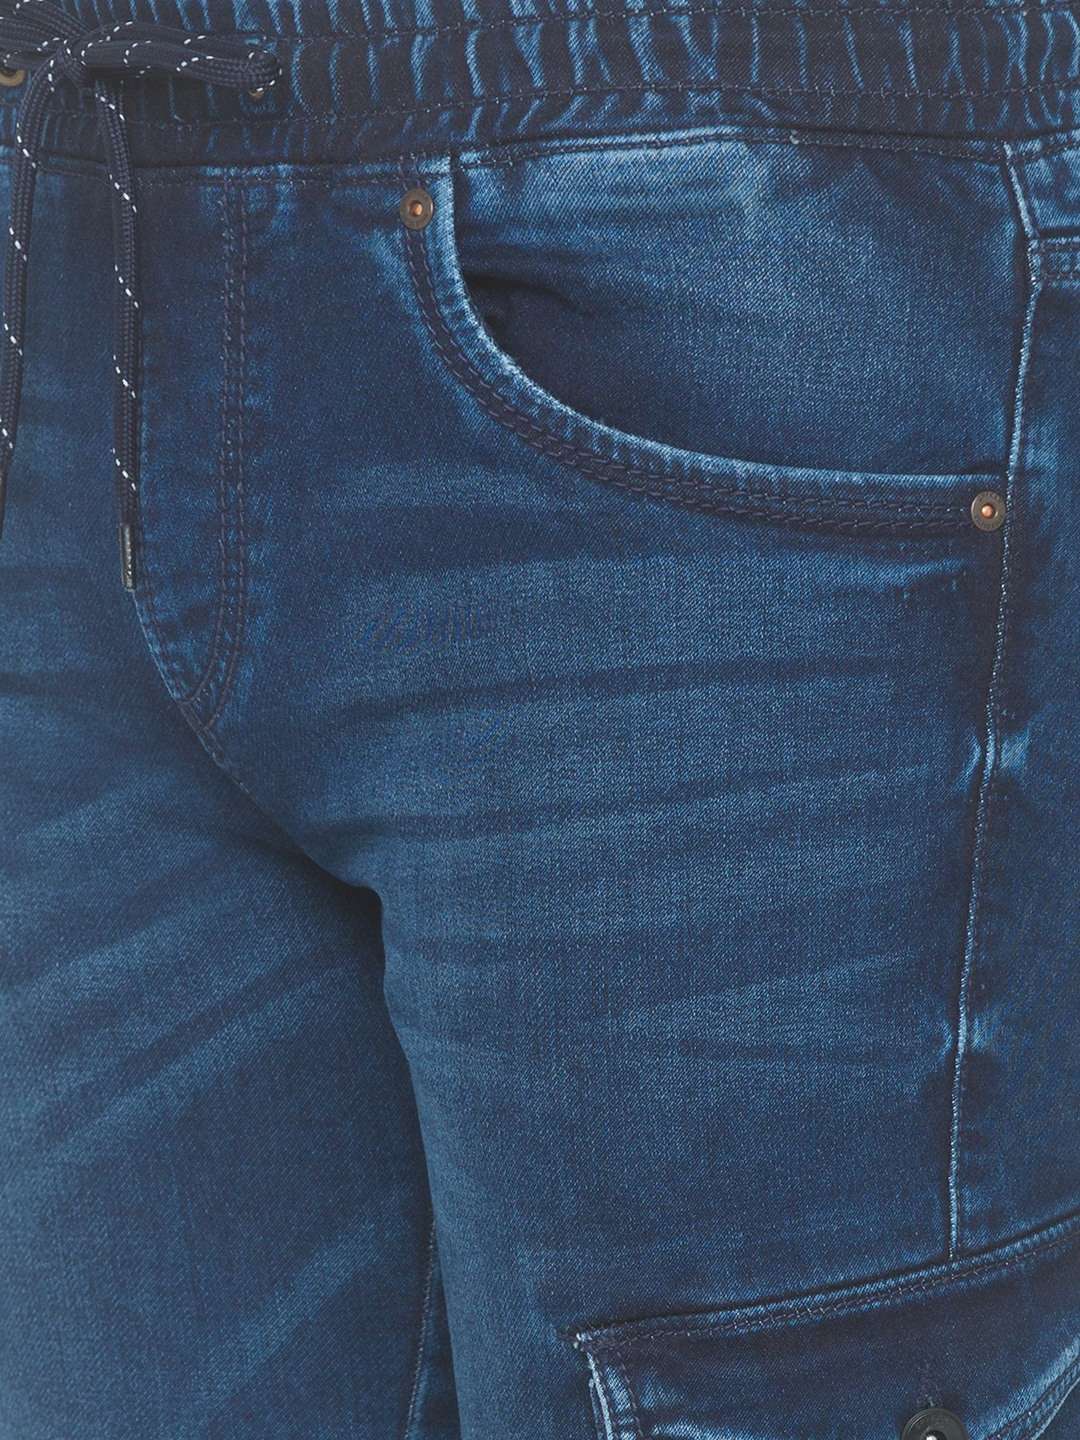 Spykar | Men's Blue Cotton Solid Joggers Jeans 5